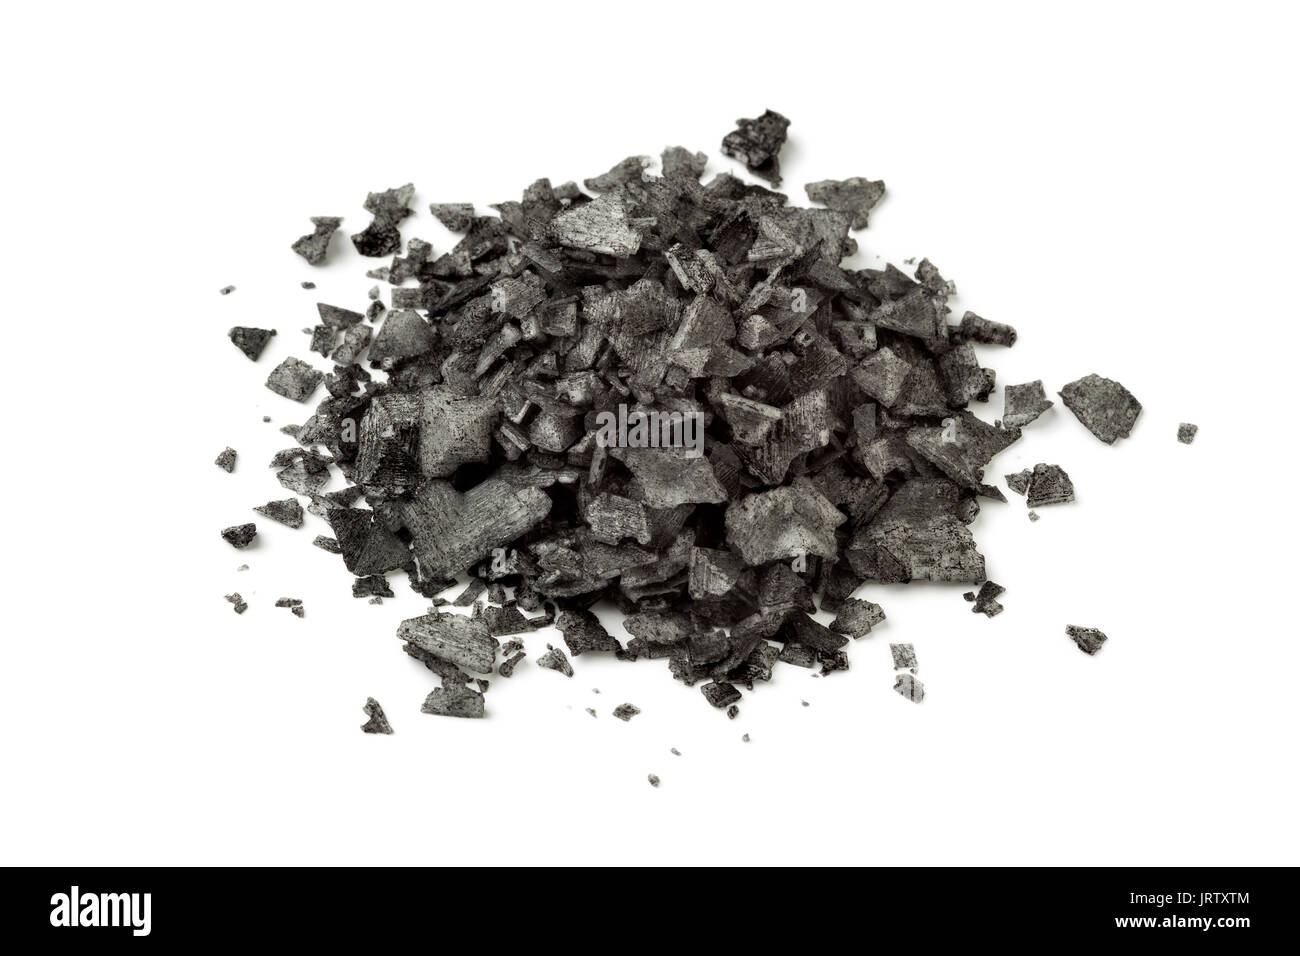 Heap of black flakes on white background Stock Photo